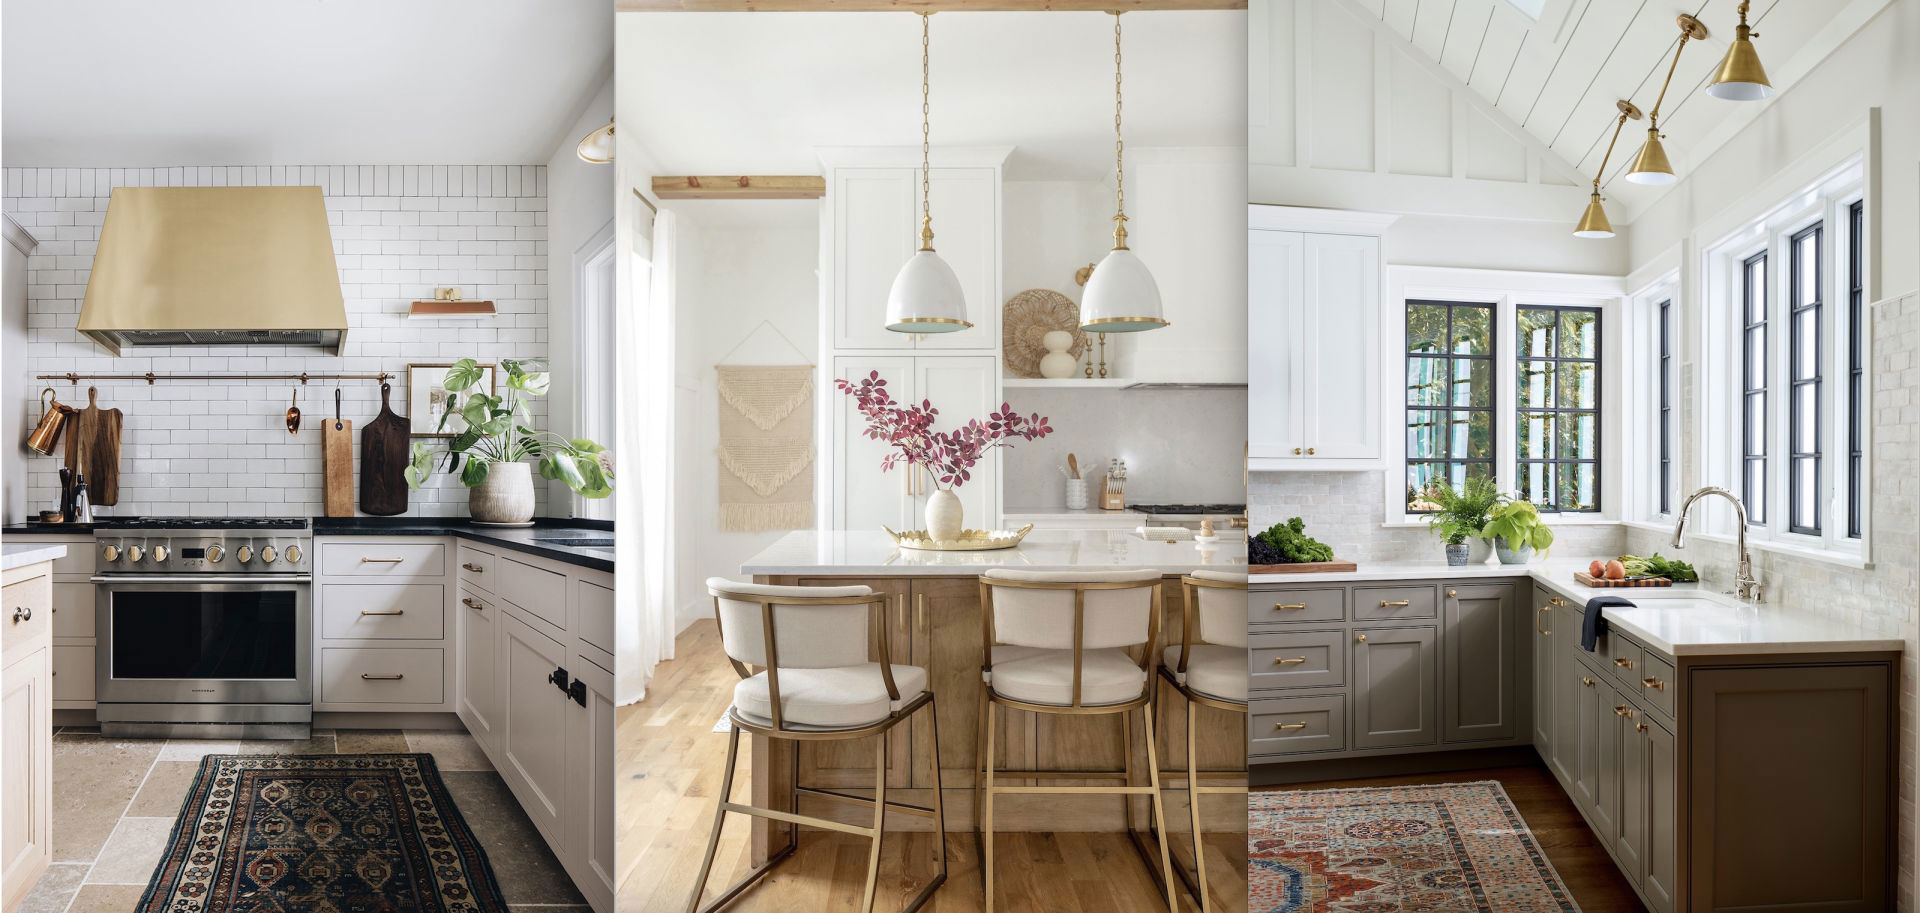 Farmhouse kitchen lighting ideas – 25 bright, homey spaces